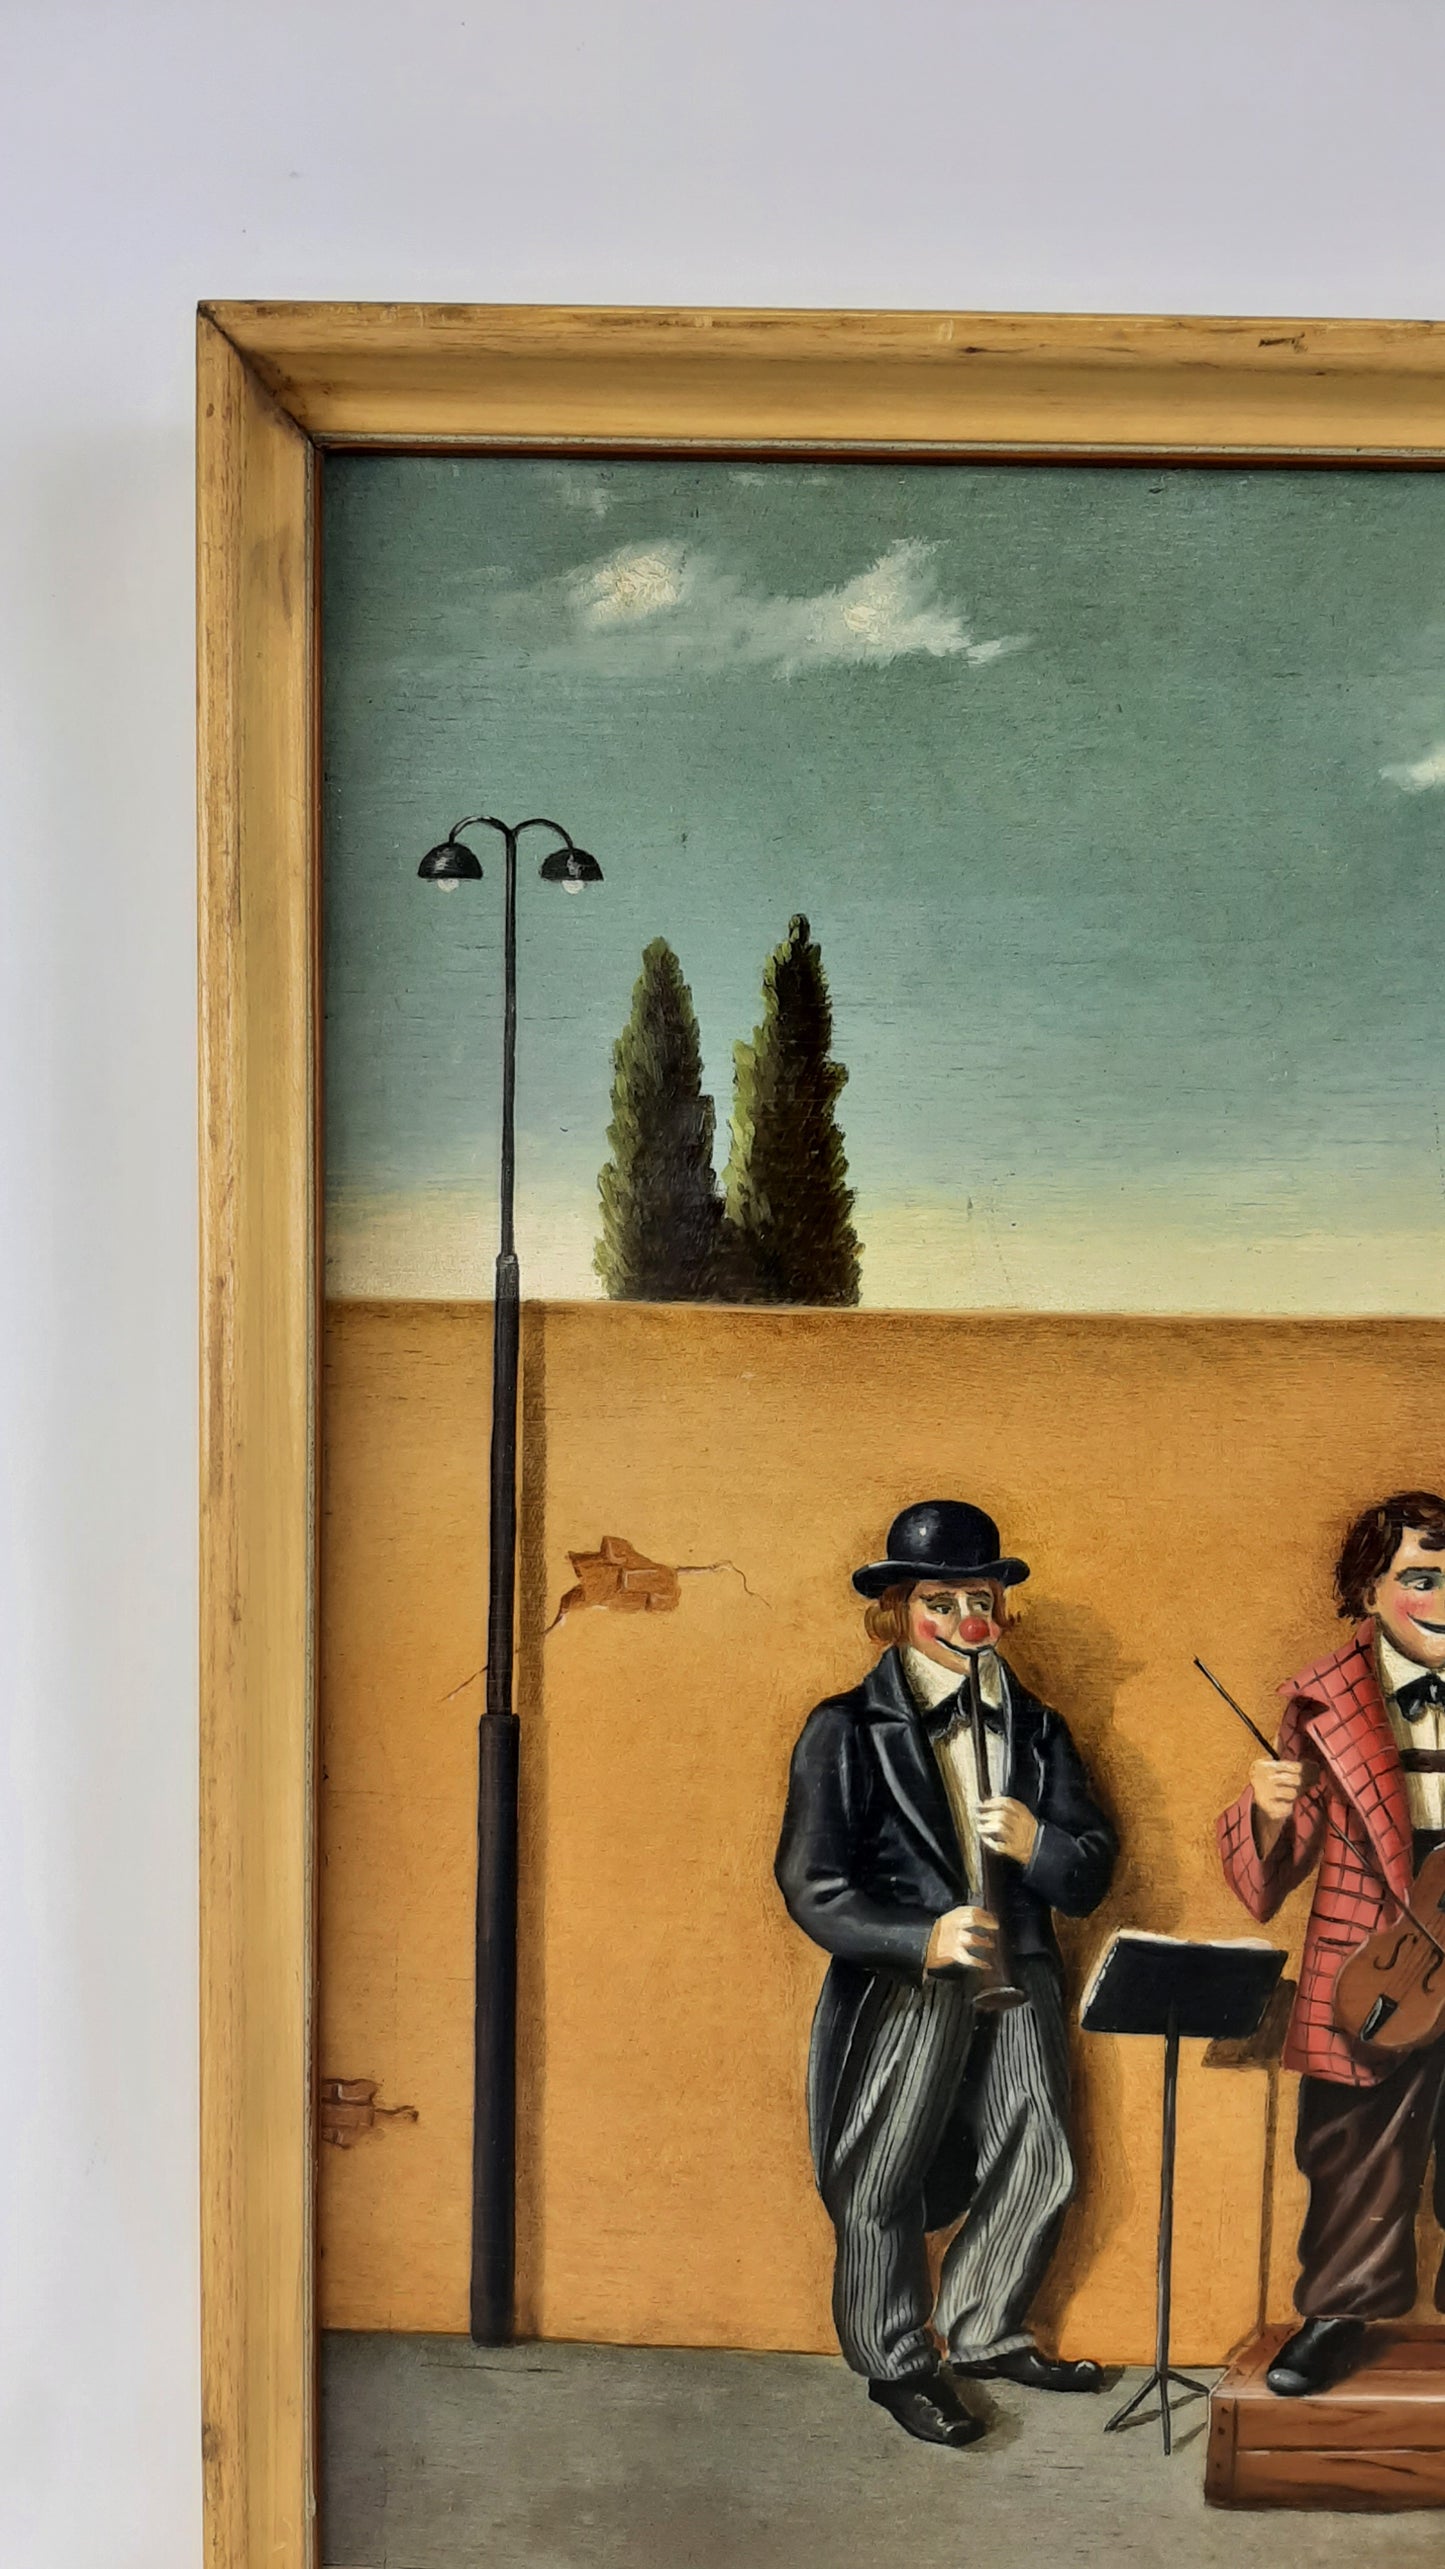 Dipinto ad olio opera del pittore Pier Luigi Cesarini concerto di clown per strada quadr ad olio su tavola firmato ritratto clown pagliacci X5